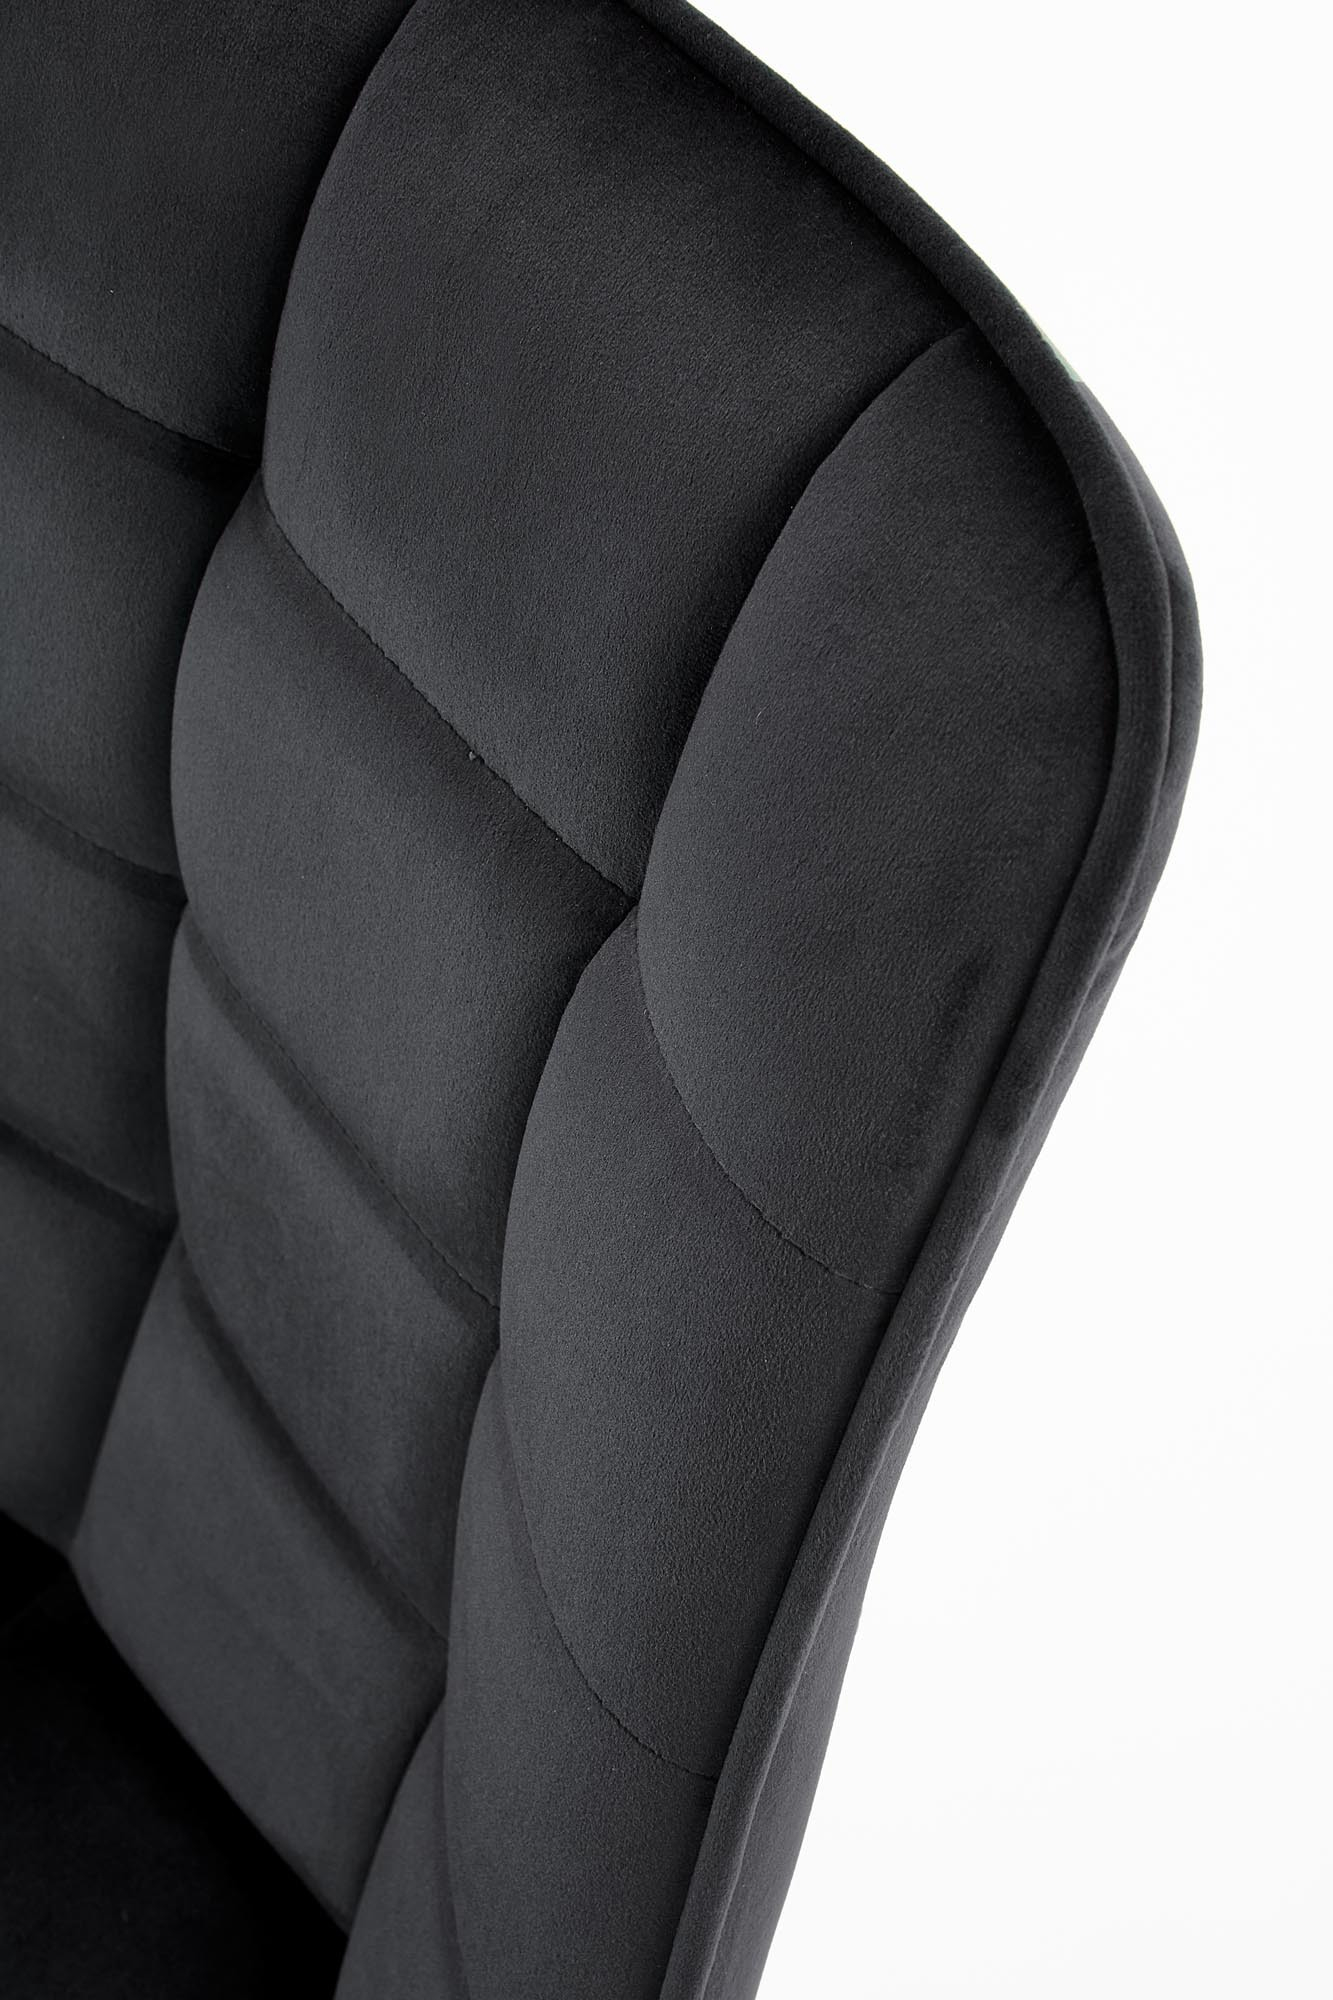 K332 krzesło nogi - czarne, siedzisko - czarny